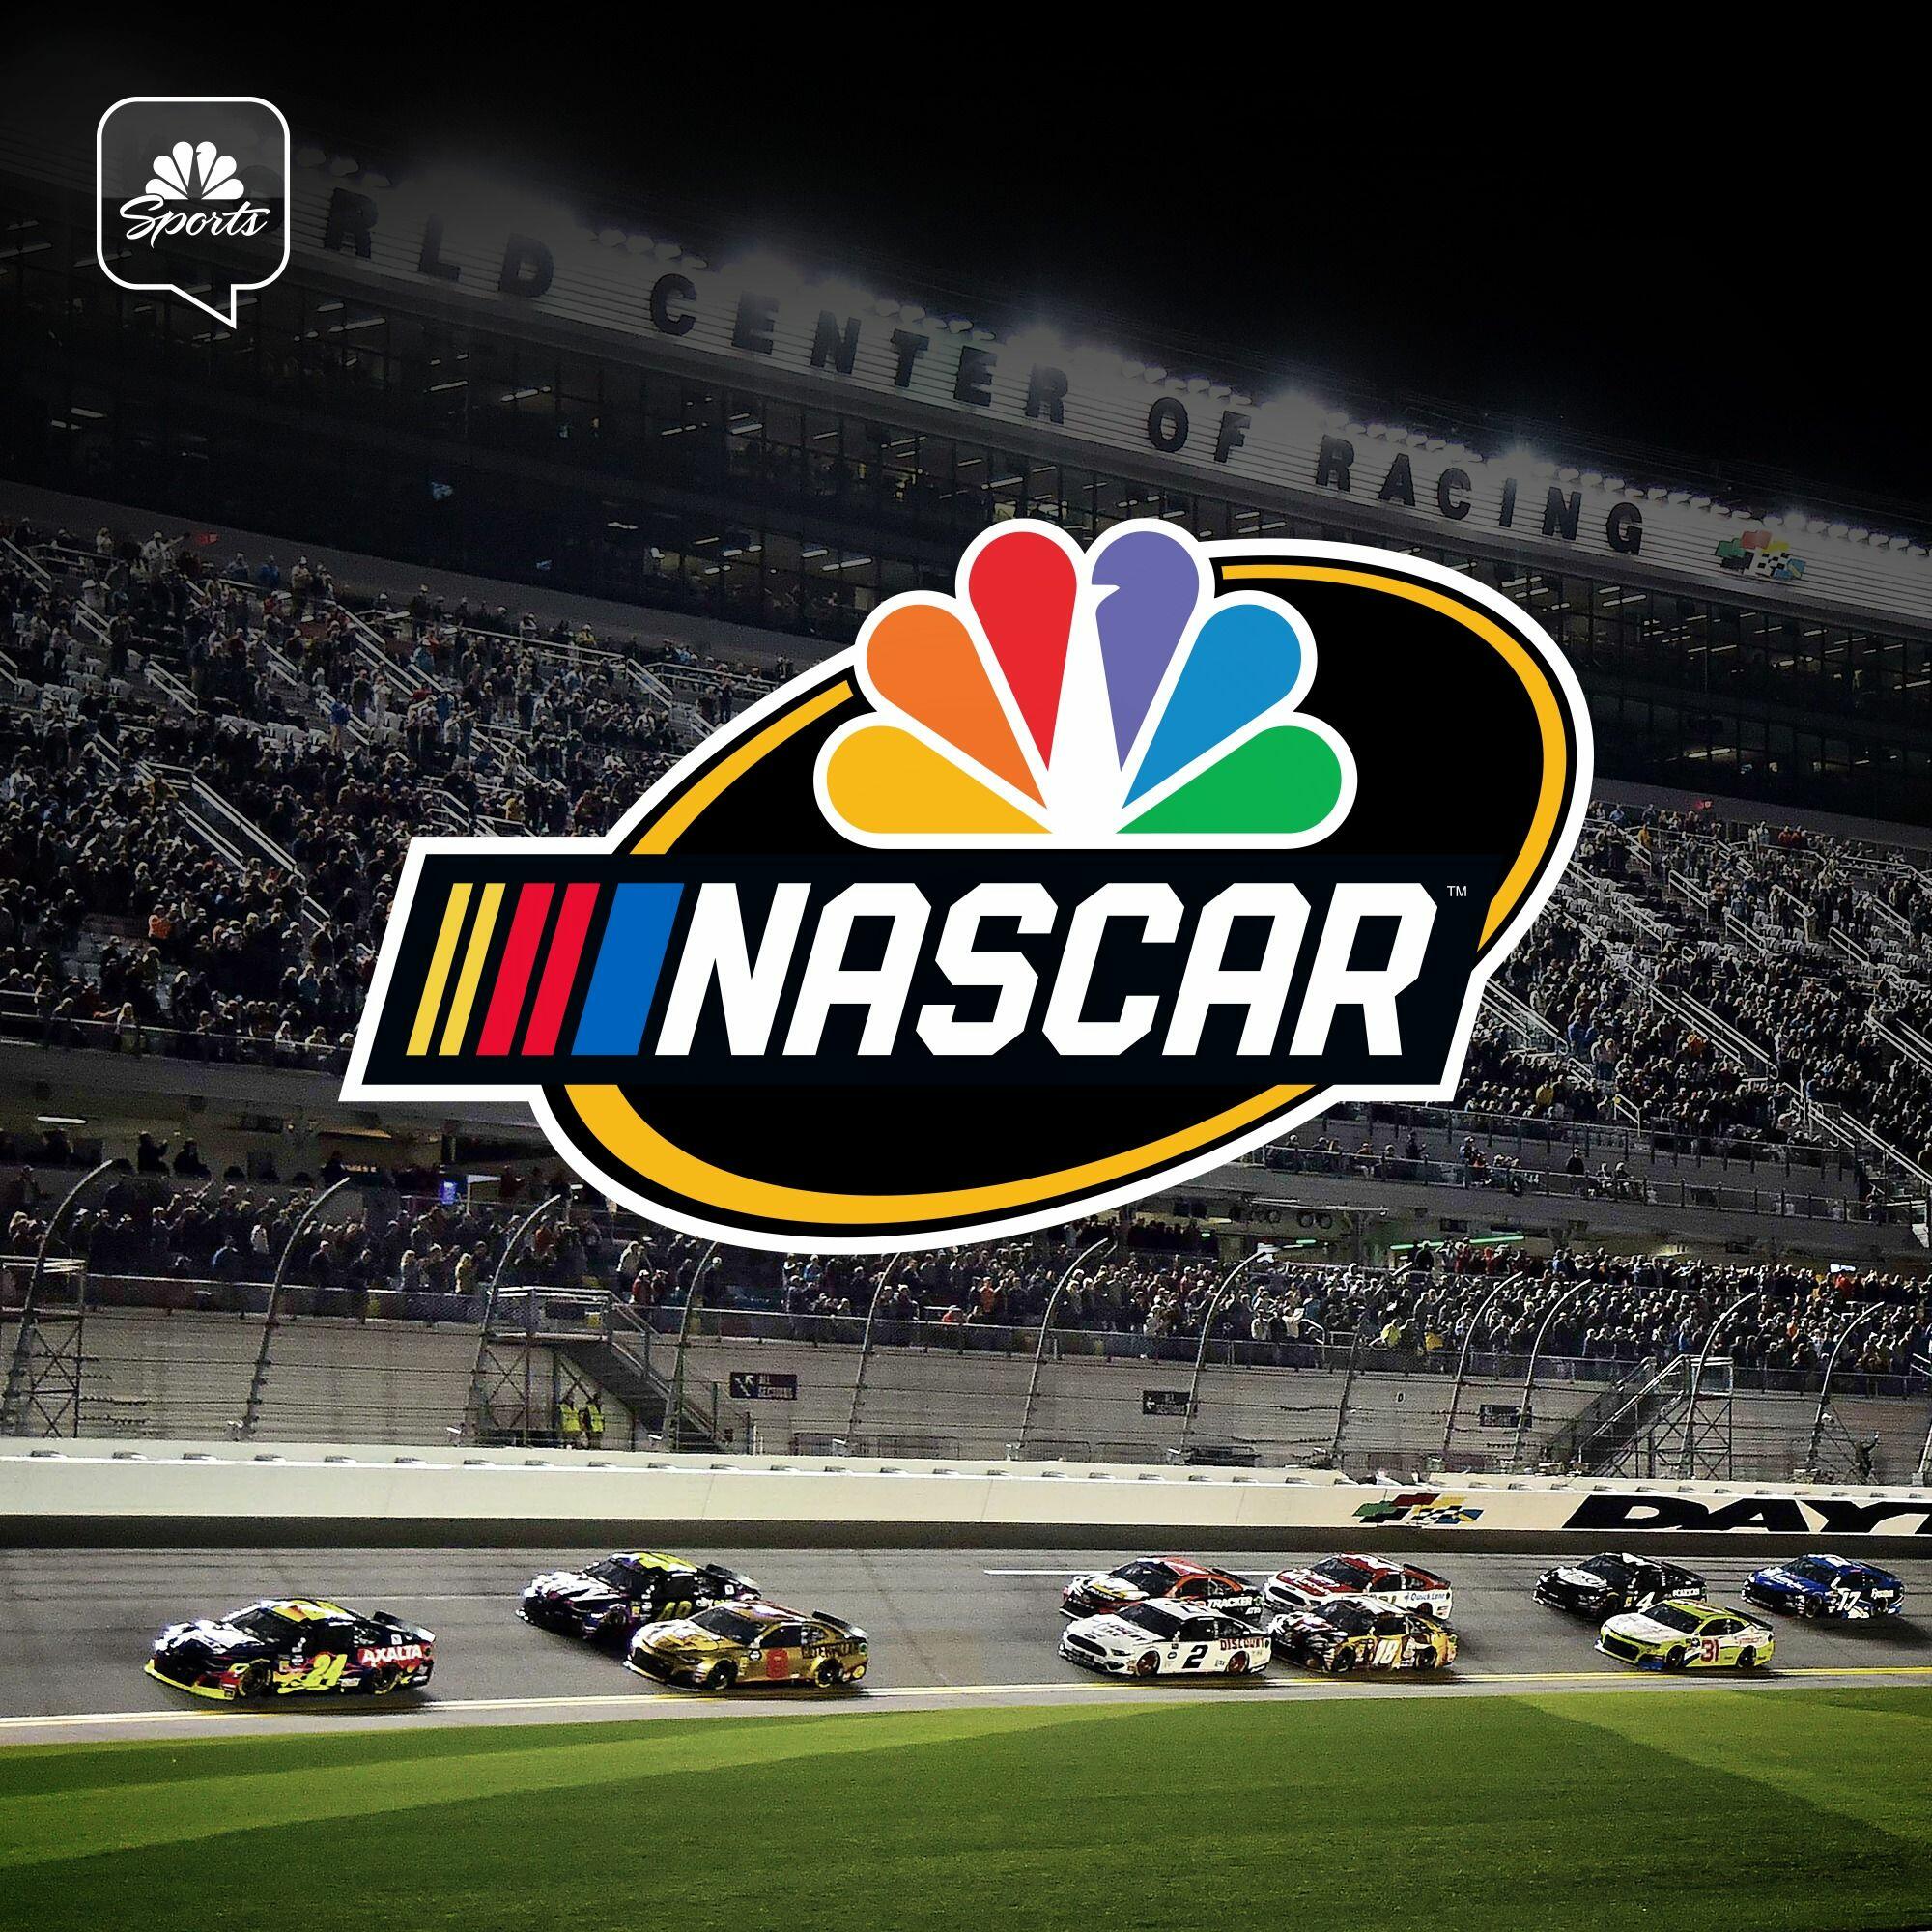 NASCAR on NBC podcast iHeart